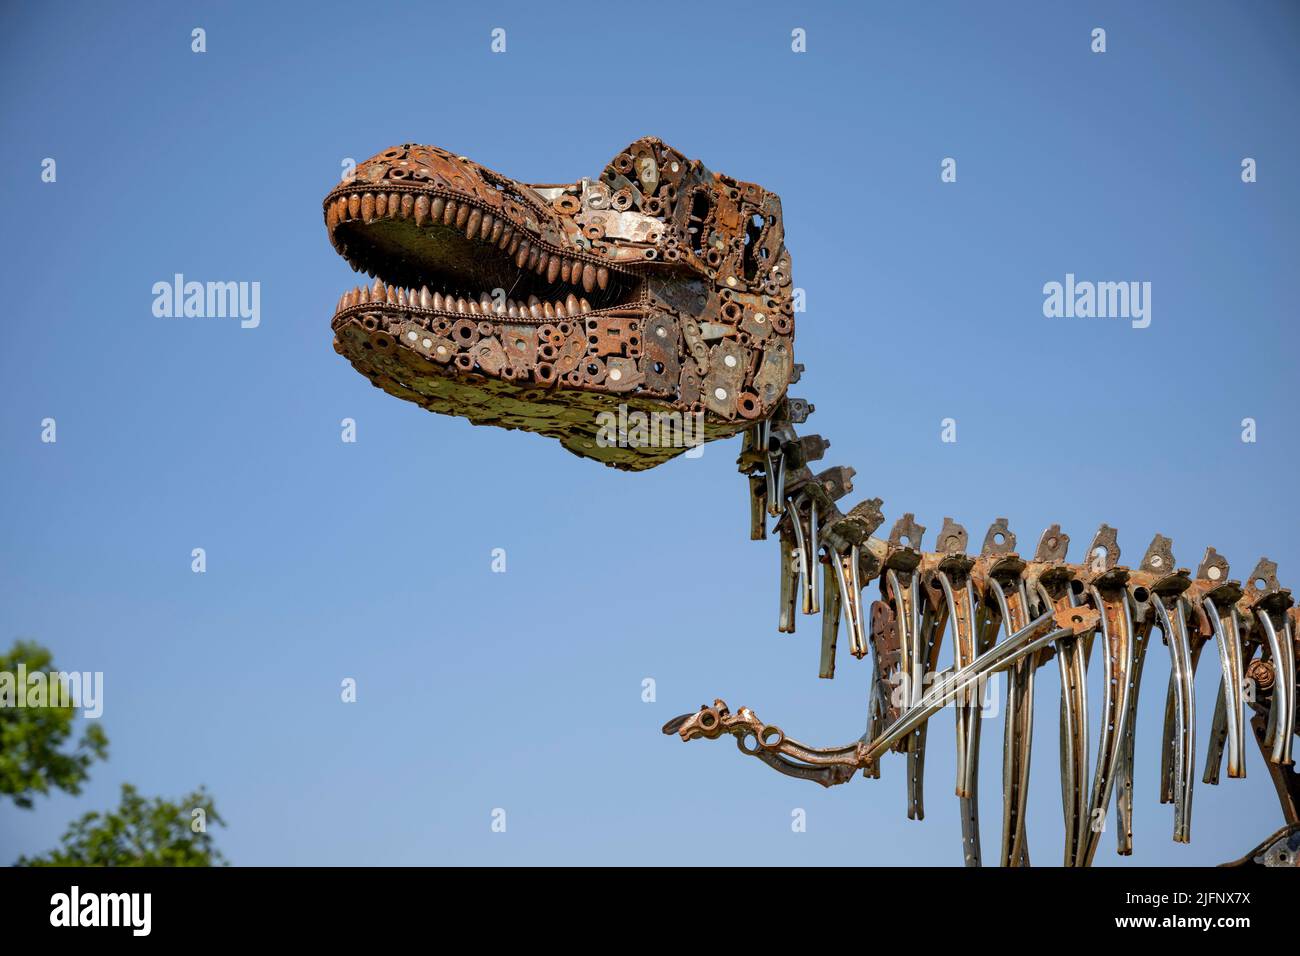 El Centro Británico de Hierro, Exposición/Escultura Tyrannosaurus Rex Foto de stock